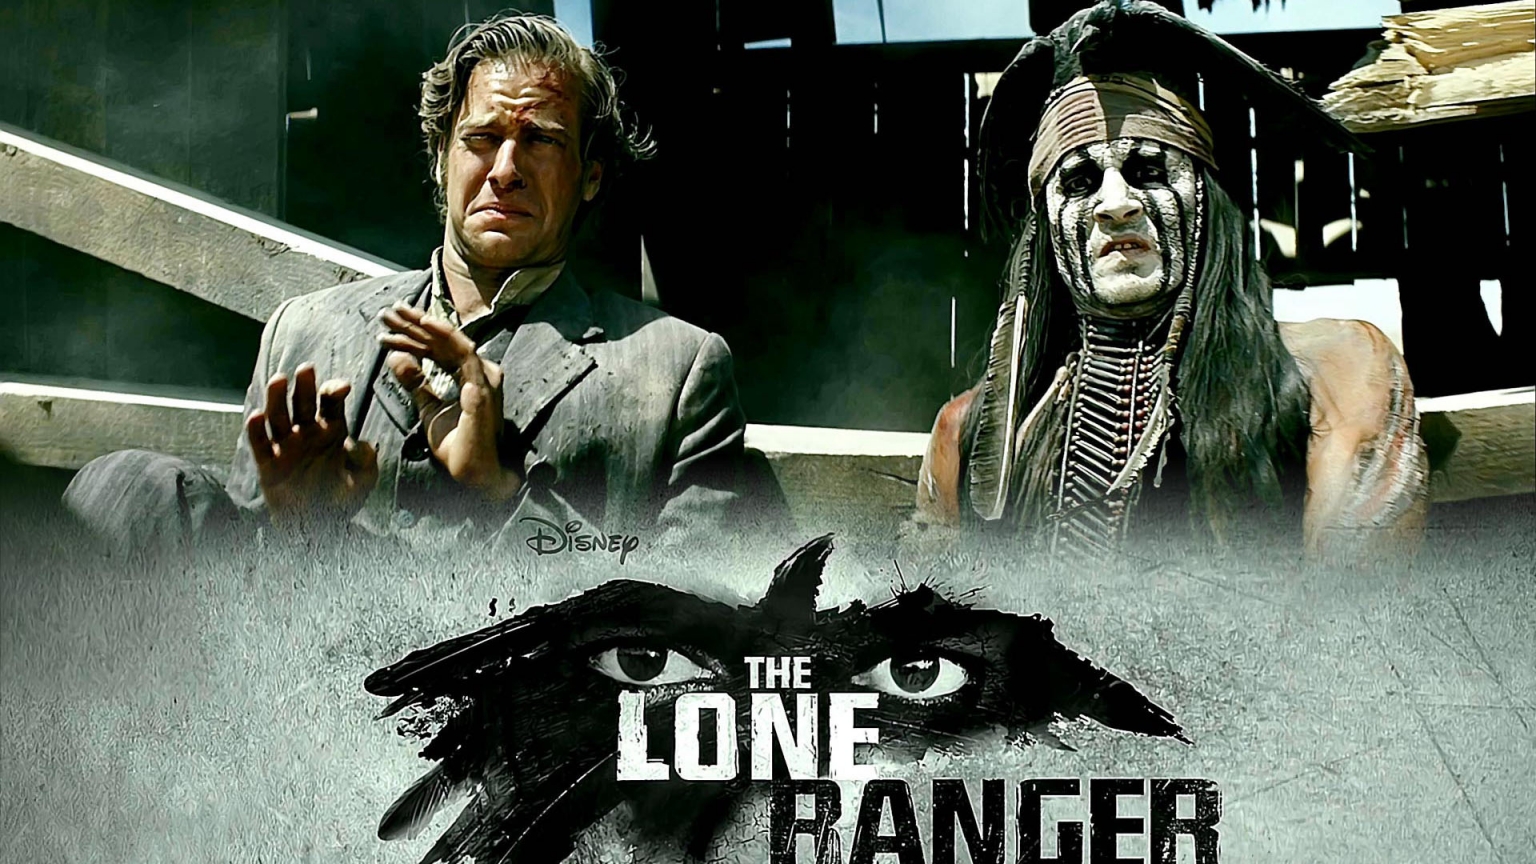 2013 The Lone Ranger for 1536 x 864 HDTV resolution